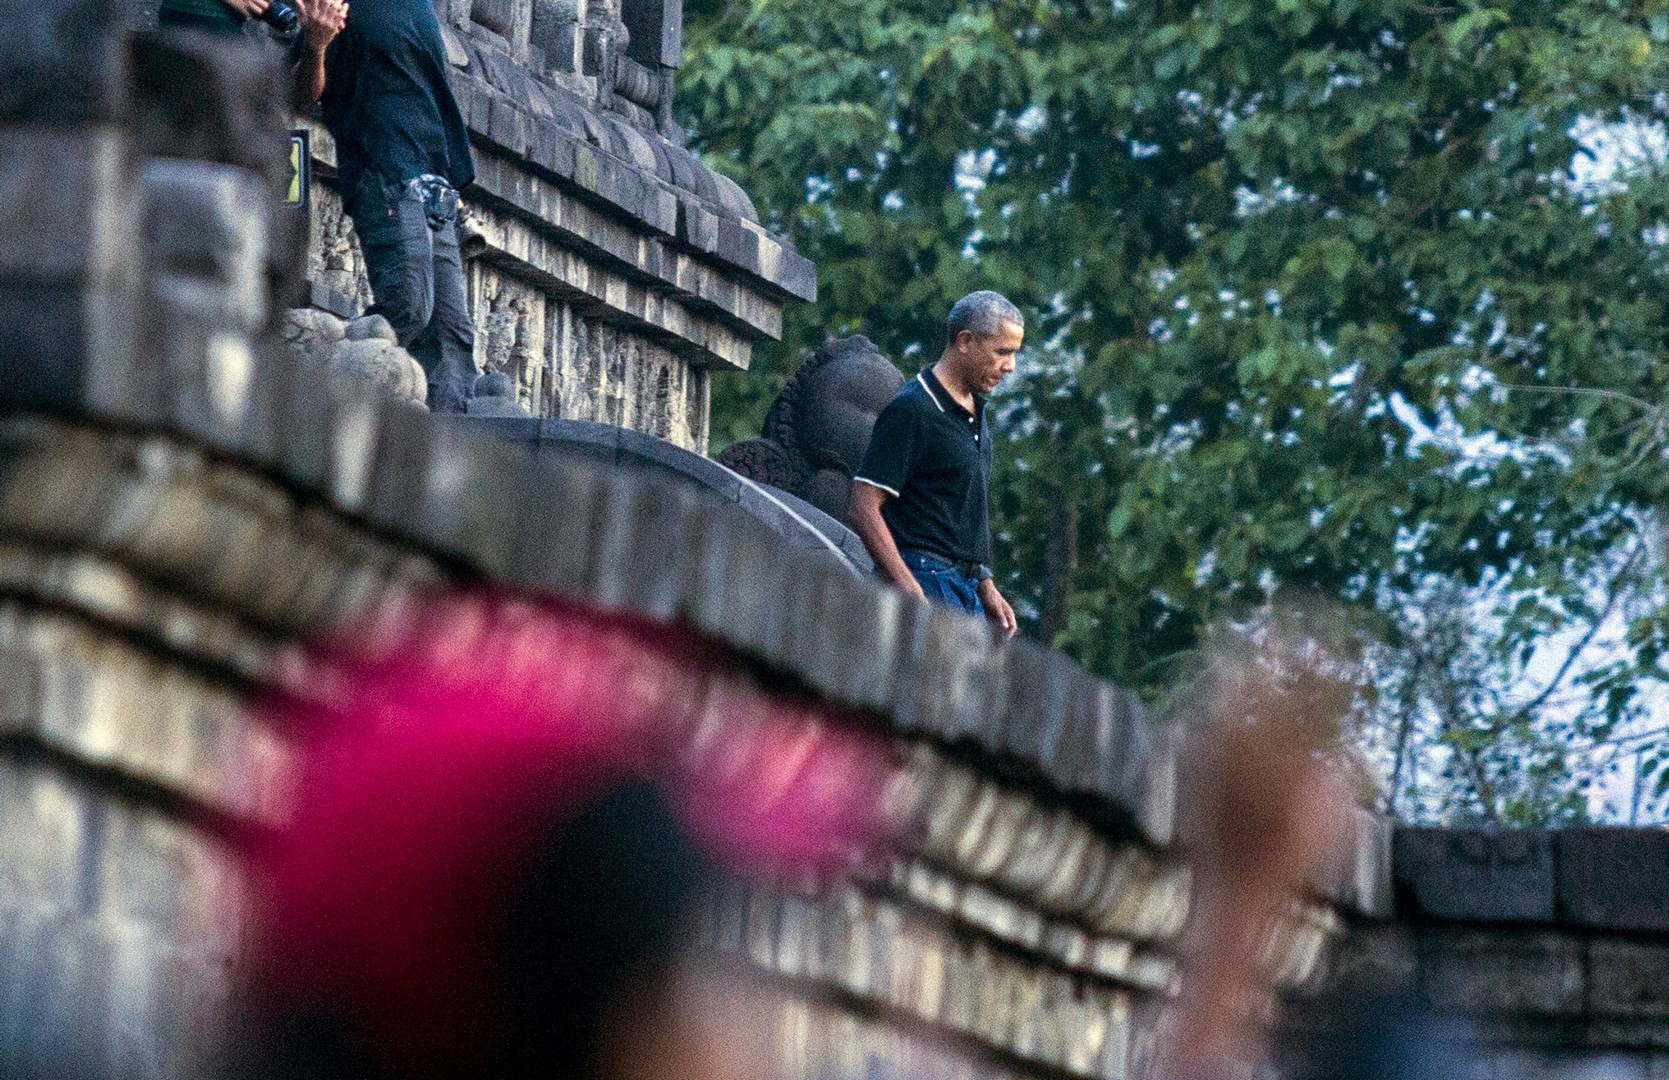 La familia Obama disfruta de unas vacaciones en Indonesia